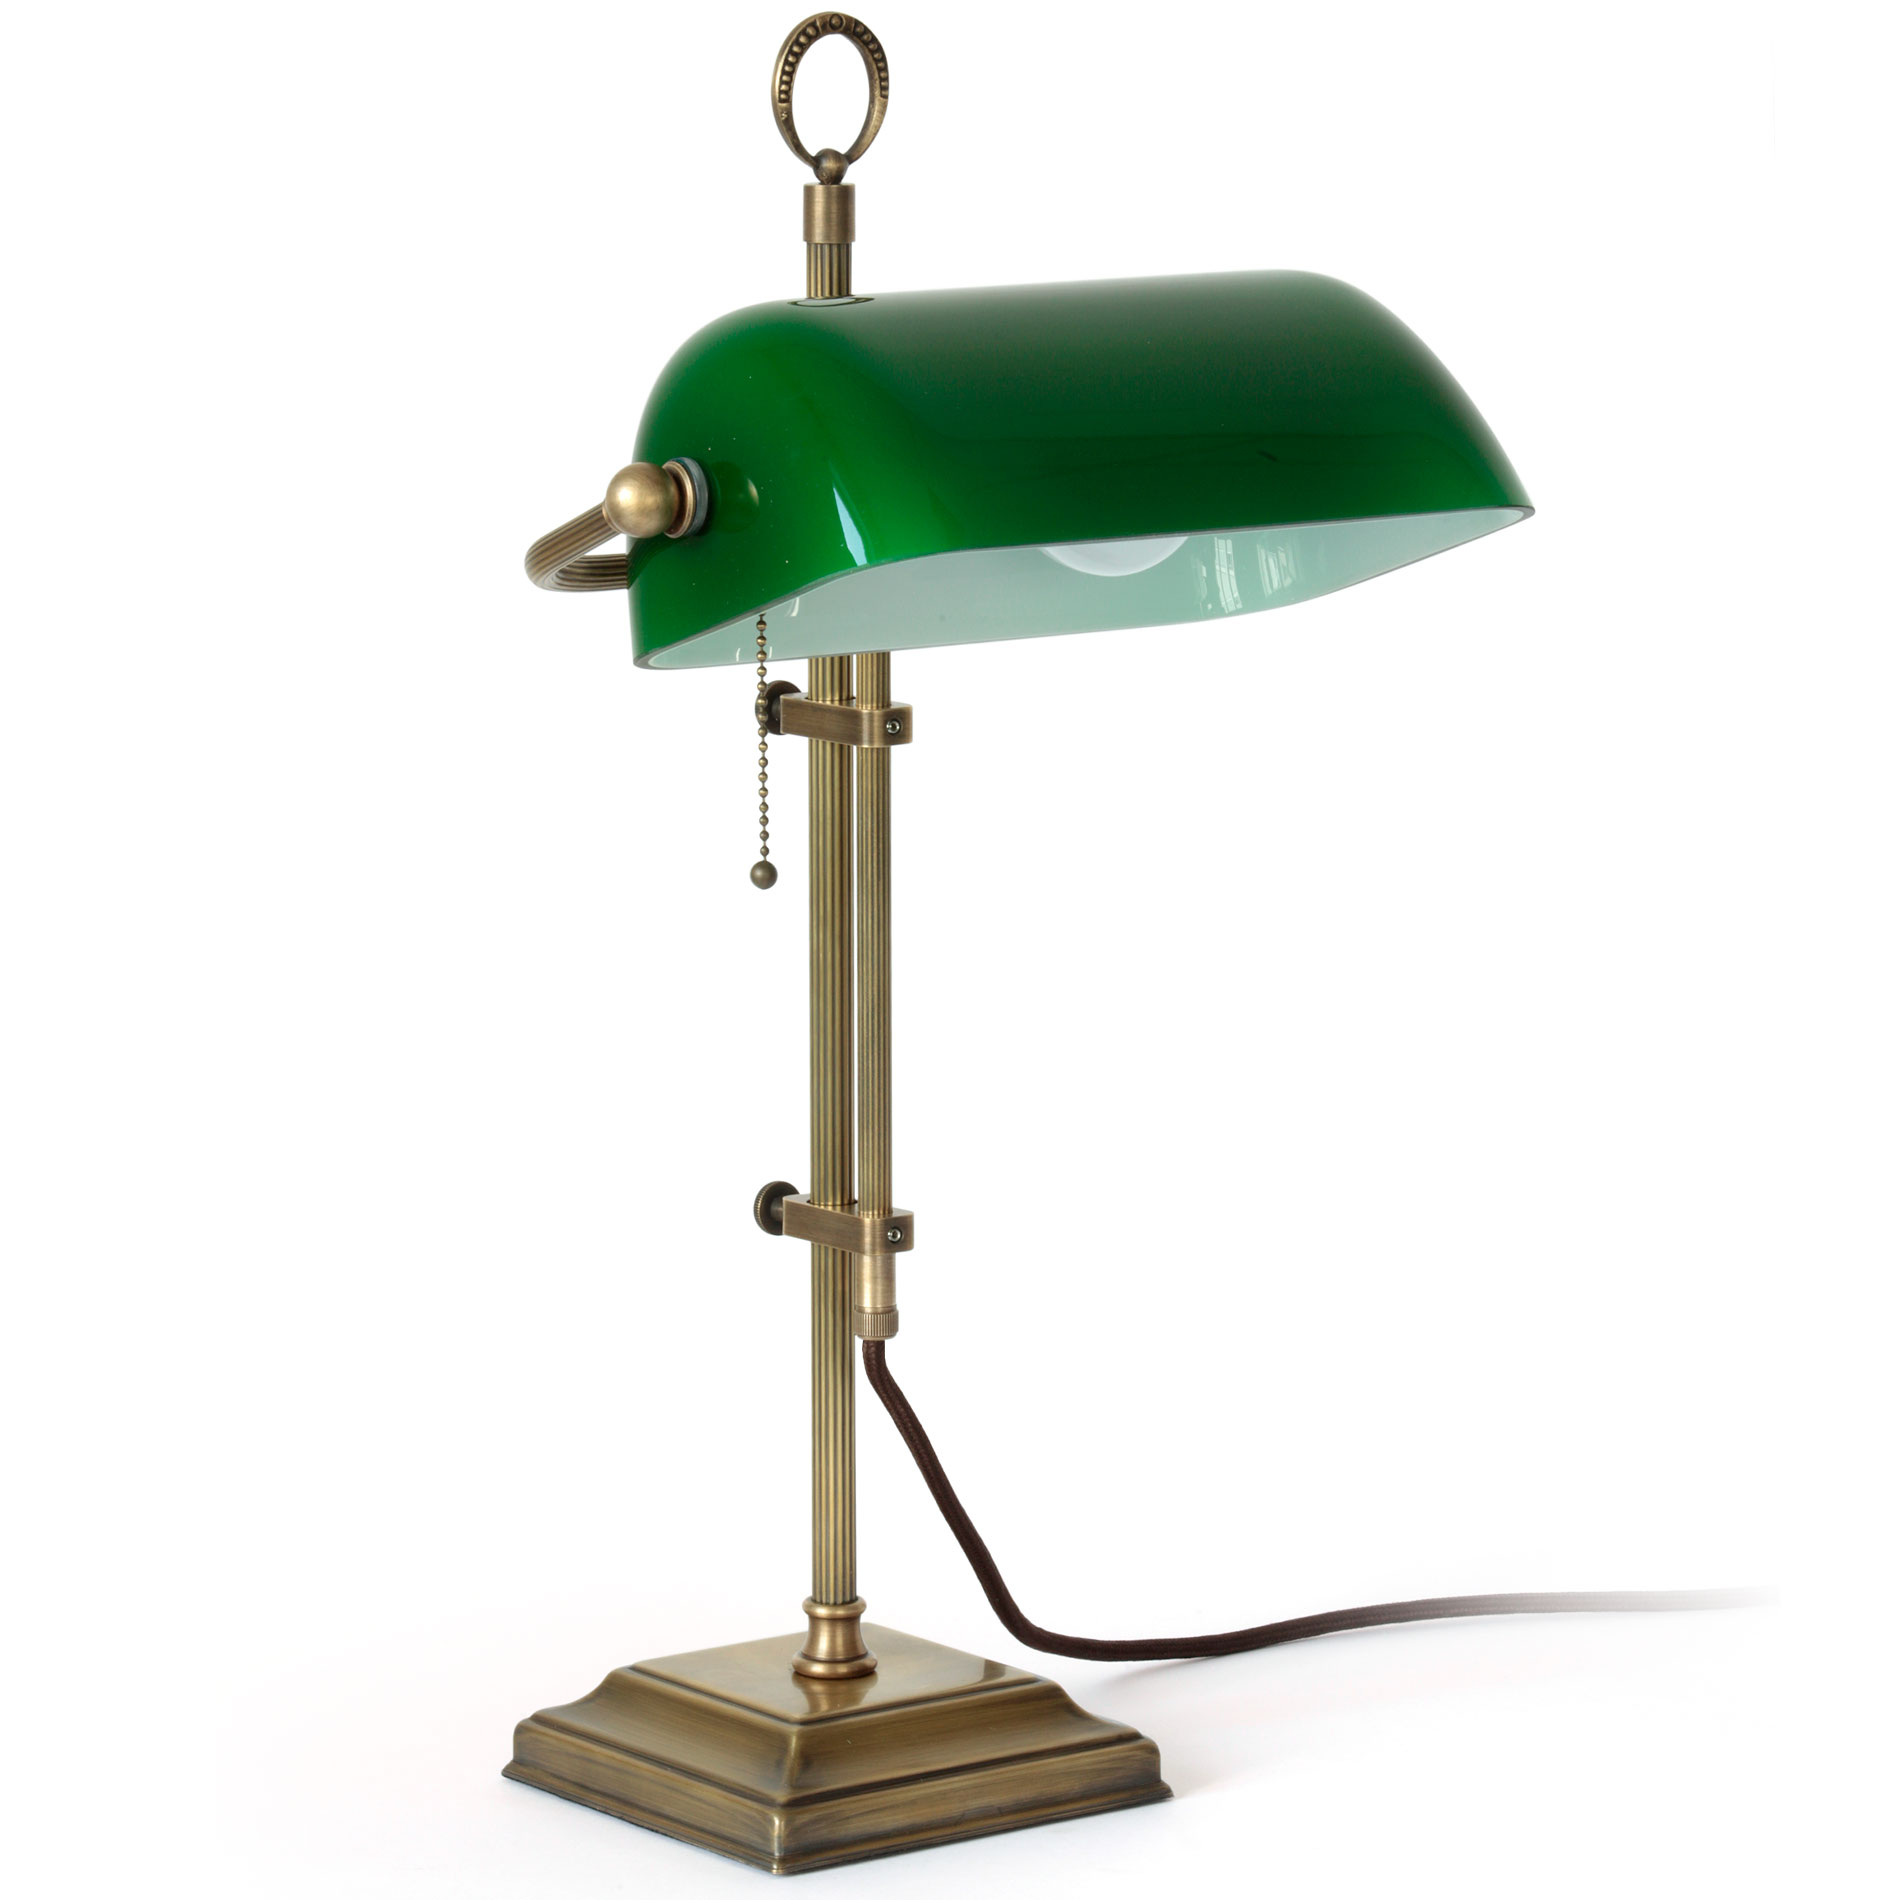 Banker’s Lamp – klassische Schreibtischleuchte mit Glasschirm